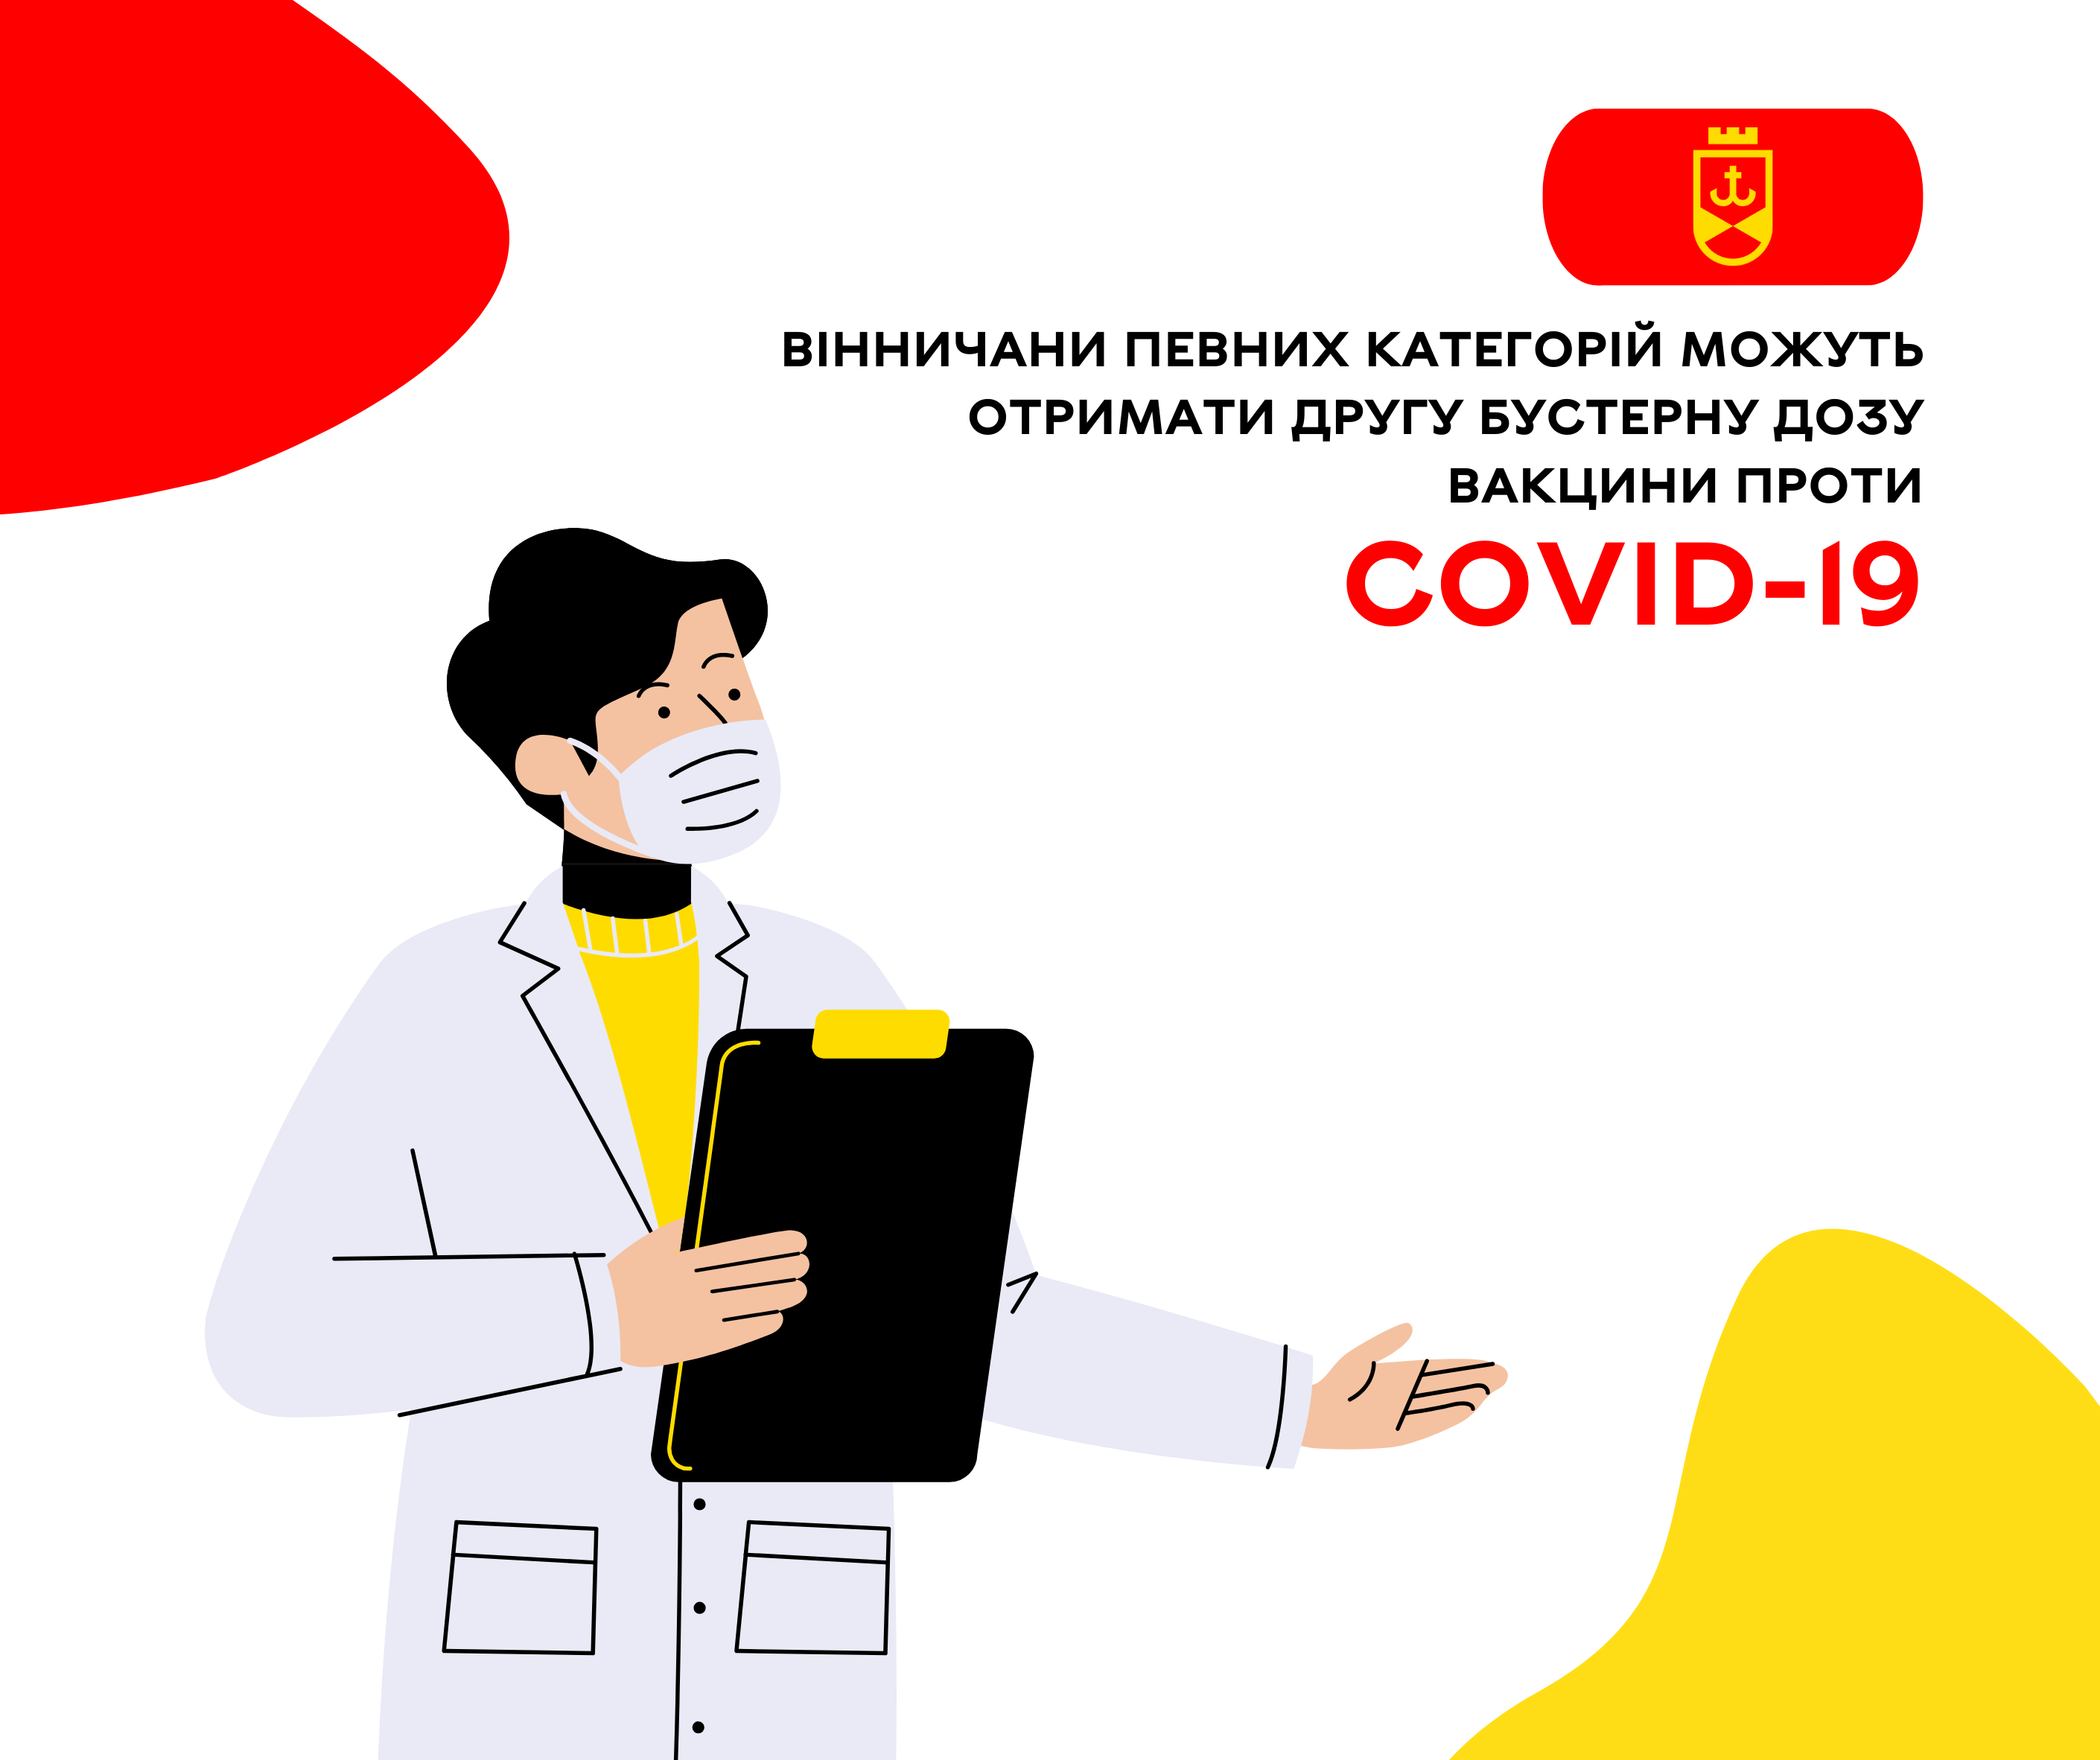 Вінничани певних категорій можуть отримати другу бустерну дозу вакцини проти COVID-19